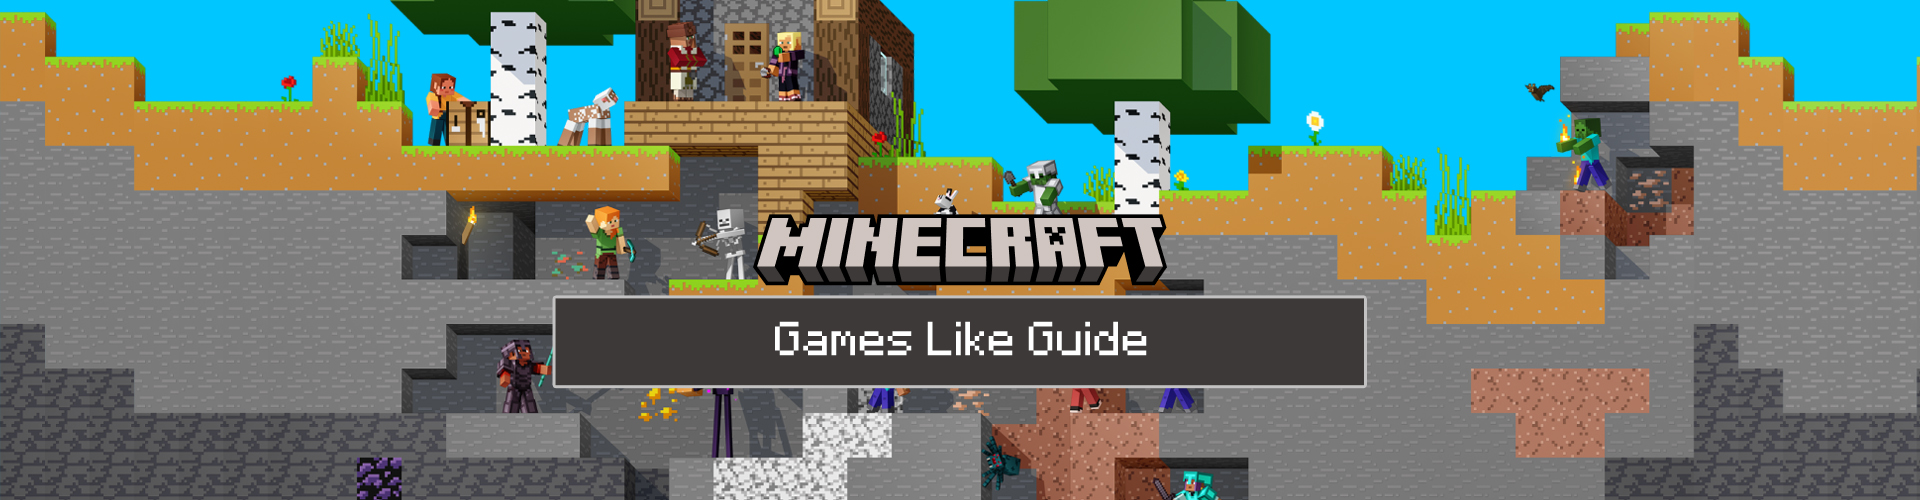 Spiele Wie Minecraft: Top 10 der Sandbox-Spiele